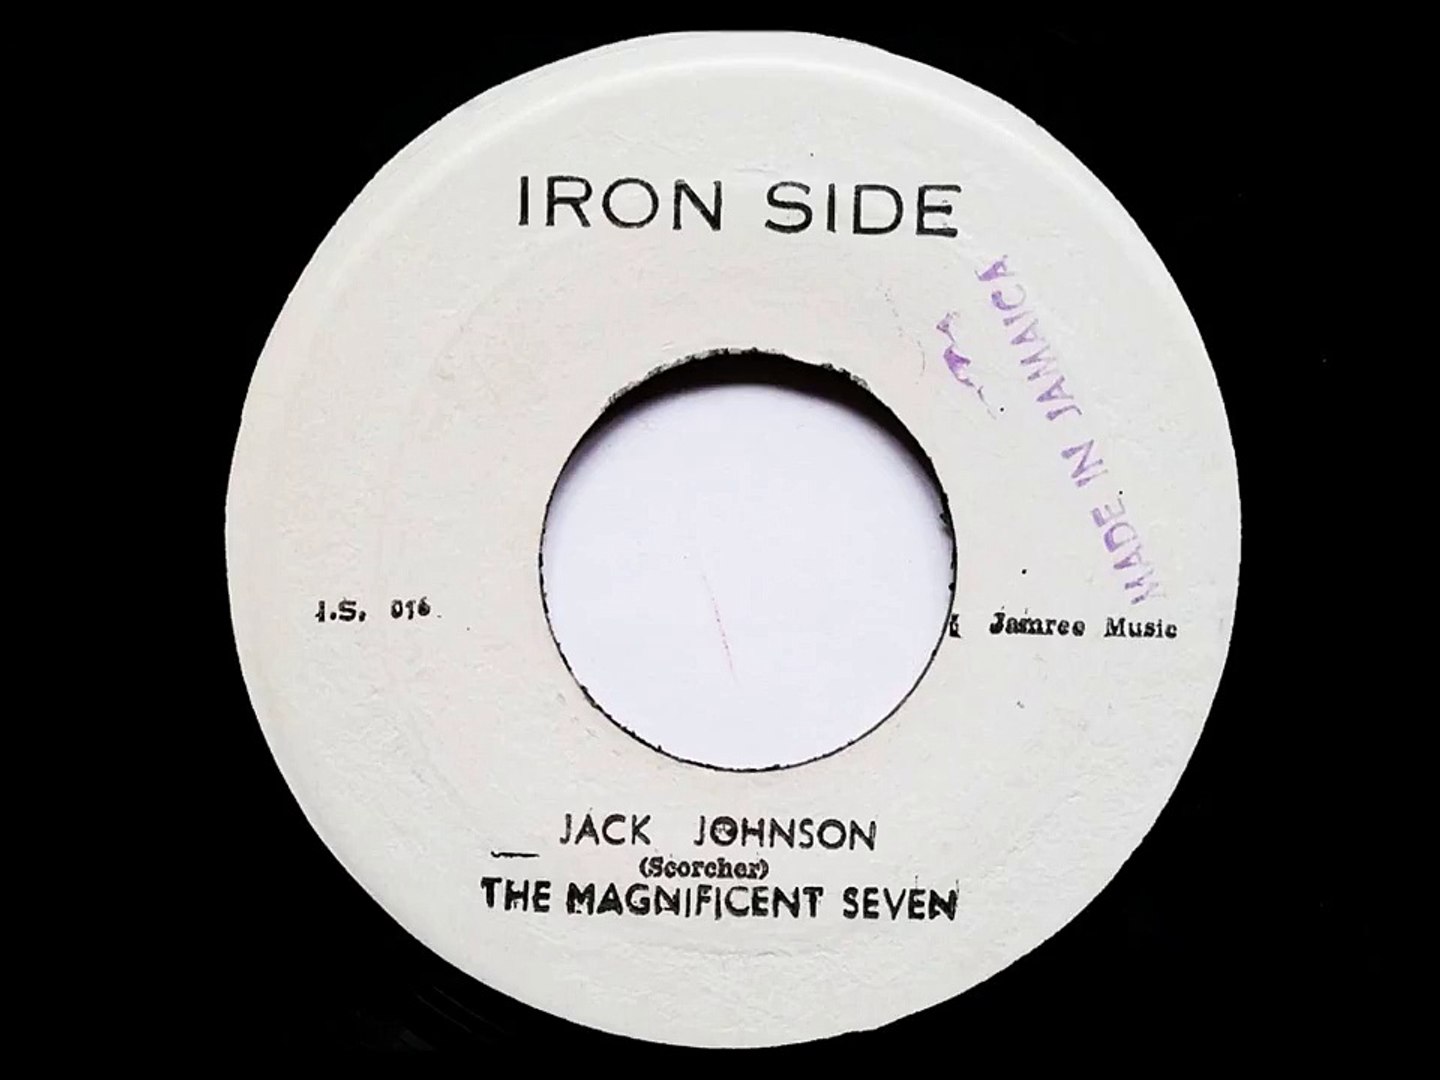 ⁣Jack Johnson The Magnificent Seven -  Studio One - Iron Side  - Coxsone